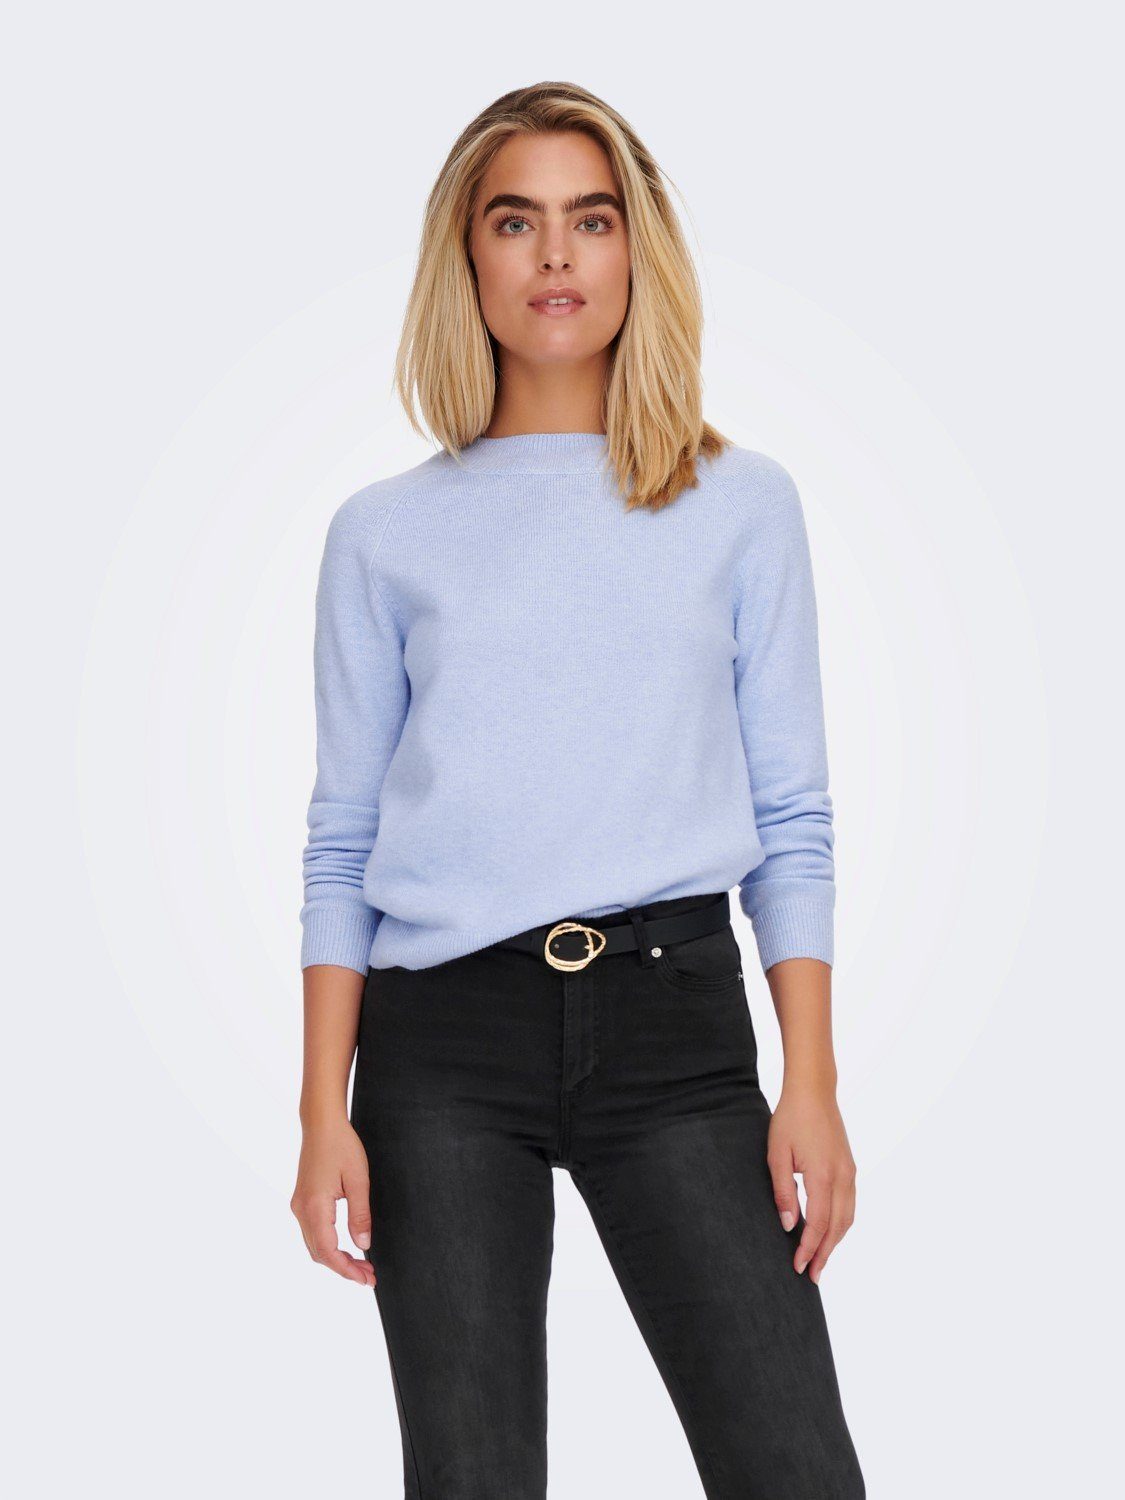 Damen hellblauer Pullover online kaufen | OTTO